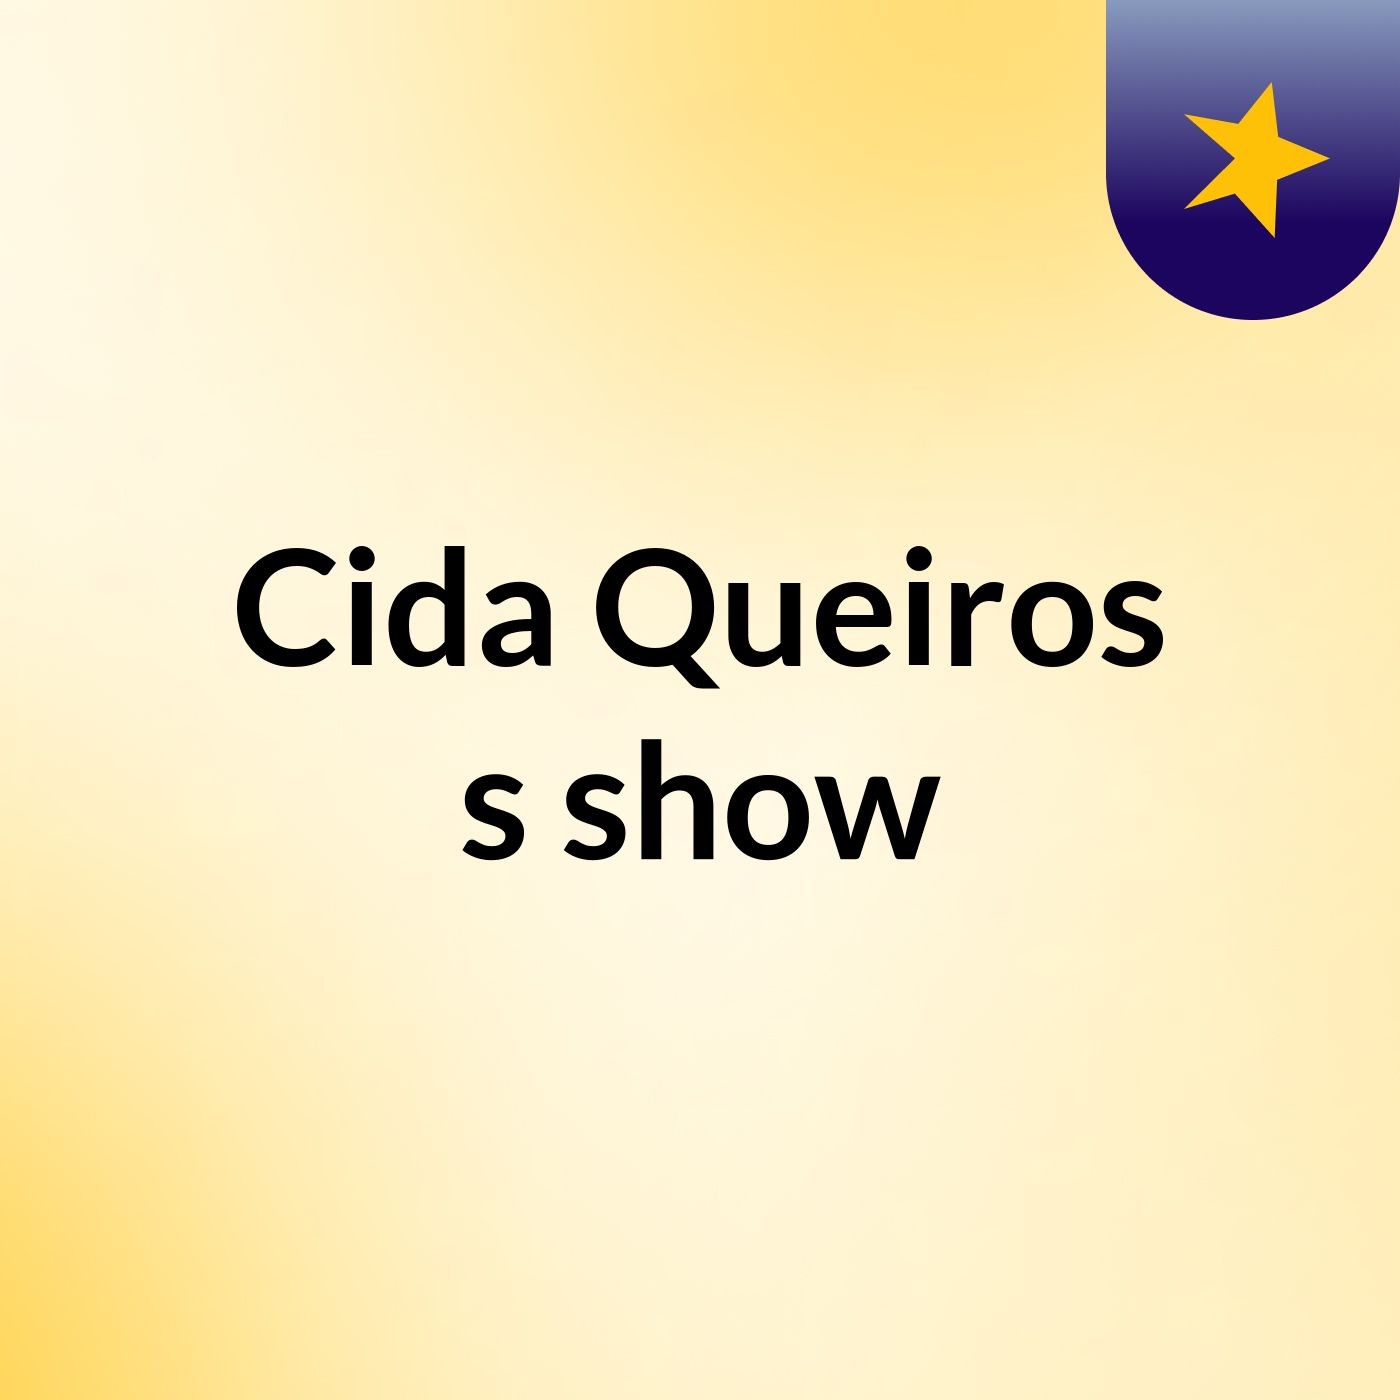 Cida Queiros's show